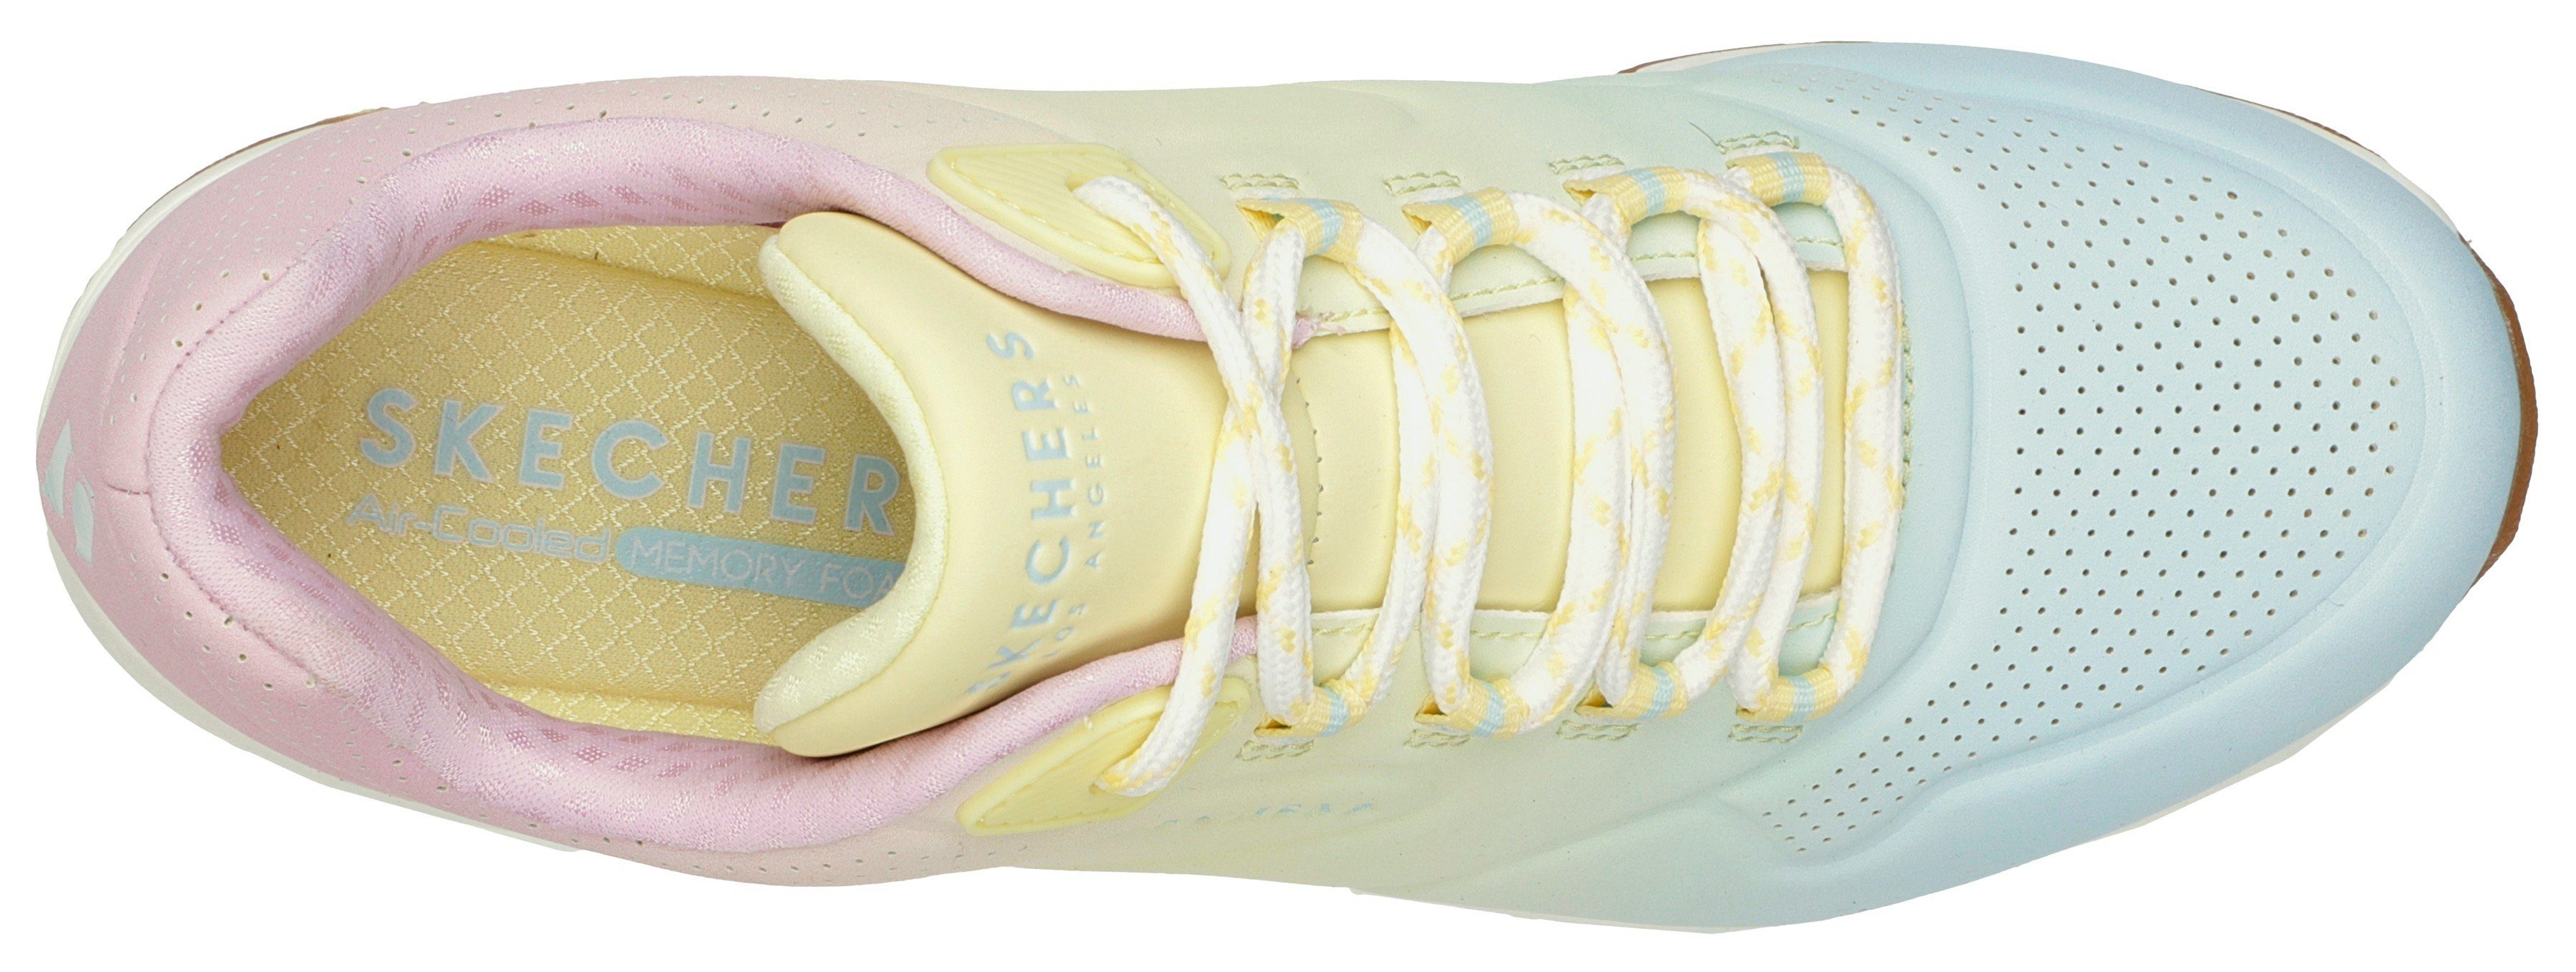 Skechers UNO 2 OMBRE AWAY Farbkombi leuchtender Sneaker in weiß-kombiniert